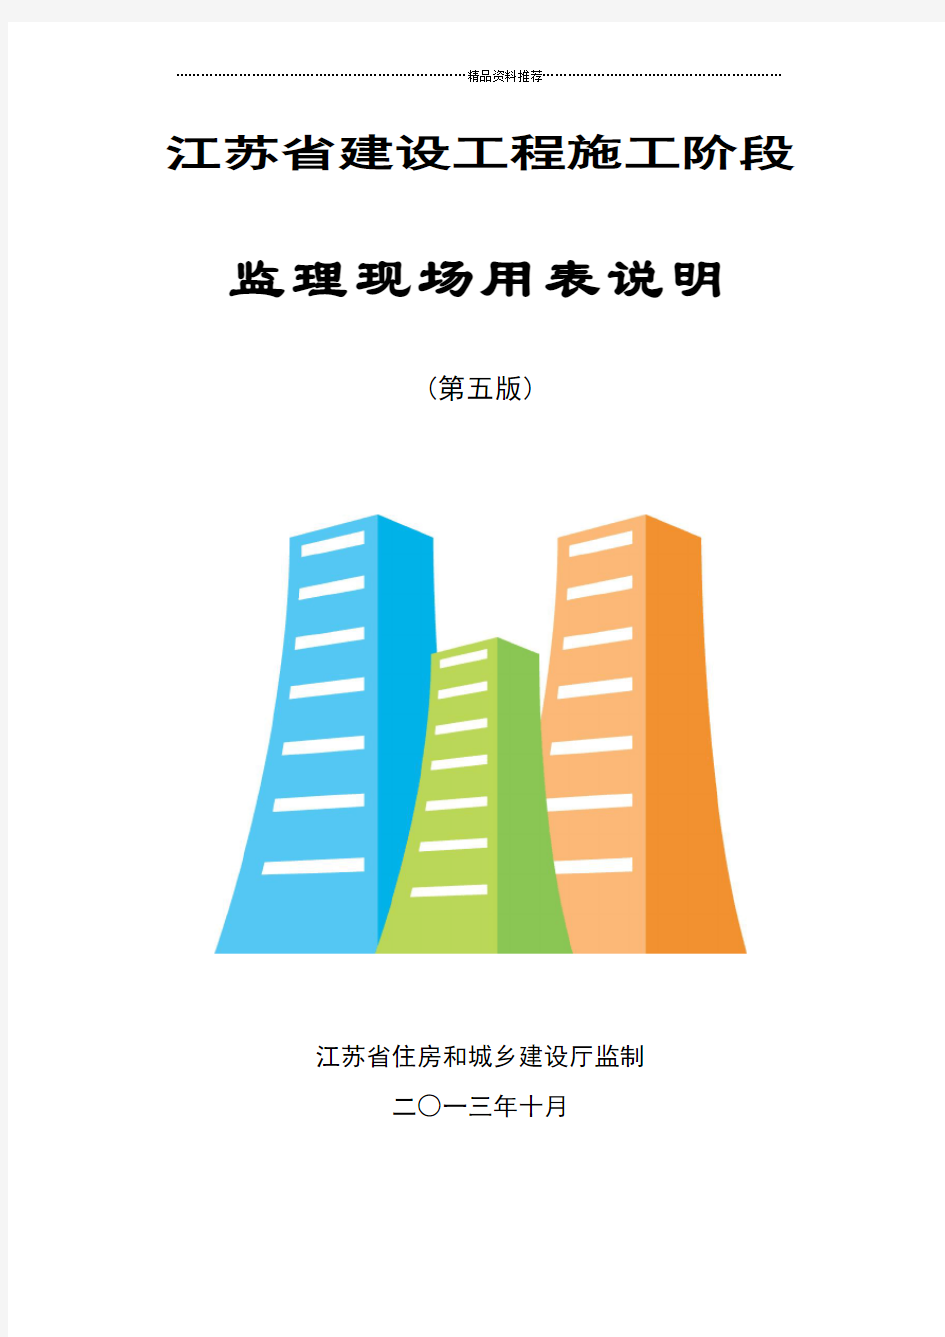 江苏省建设工程施工阶段监理现场用表(第五版)